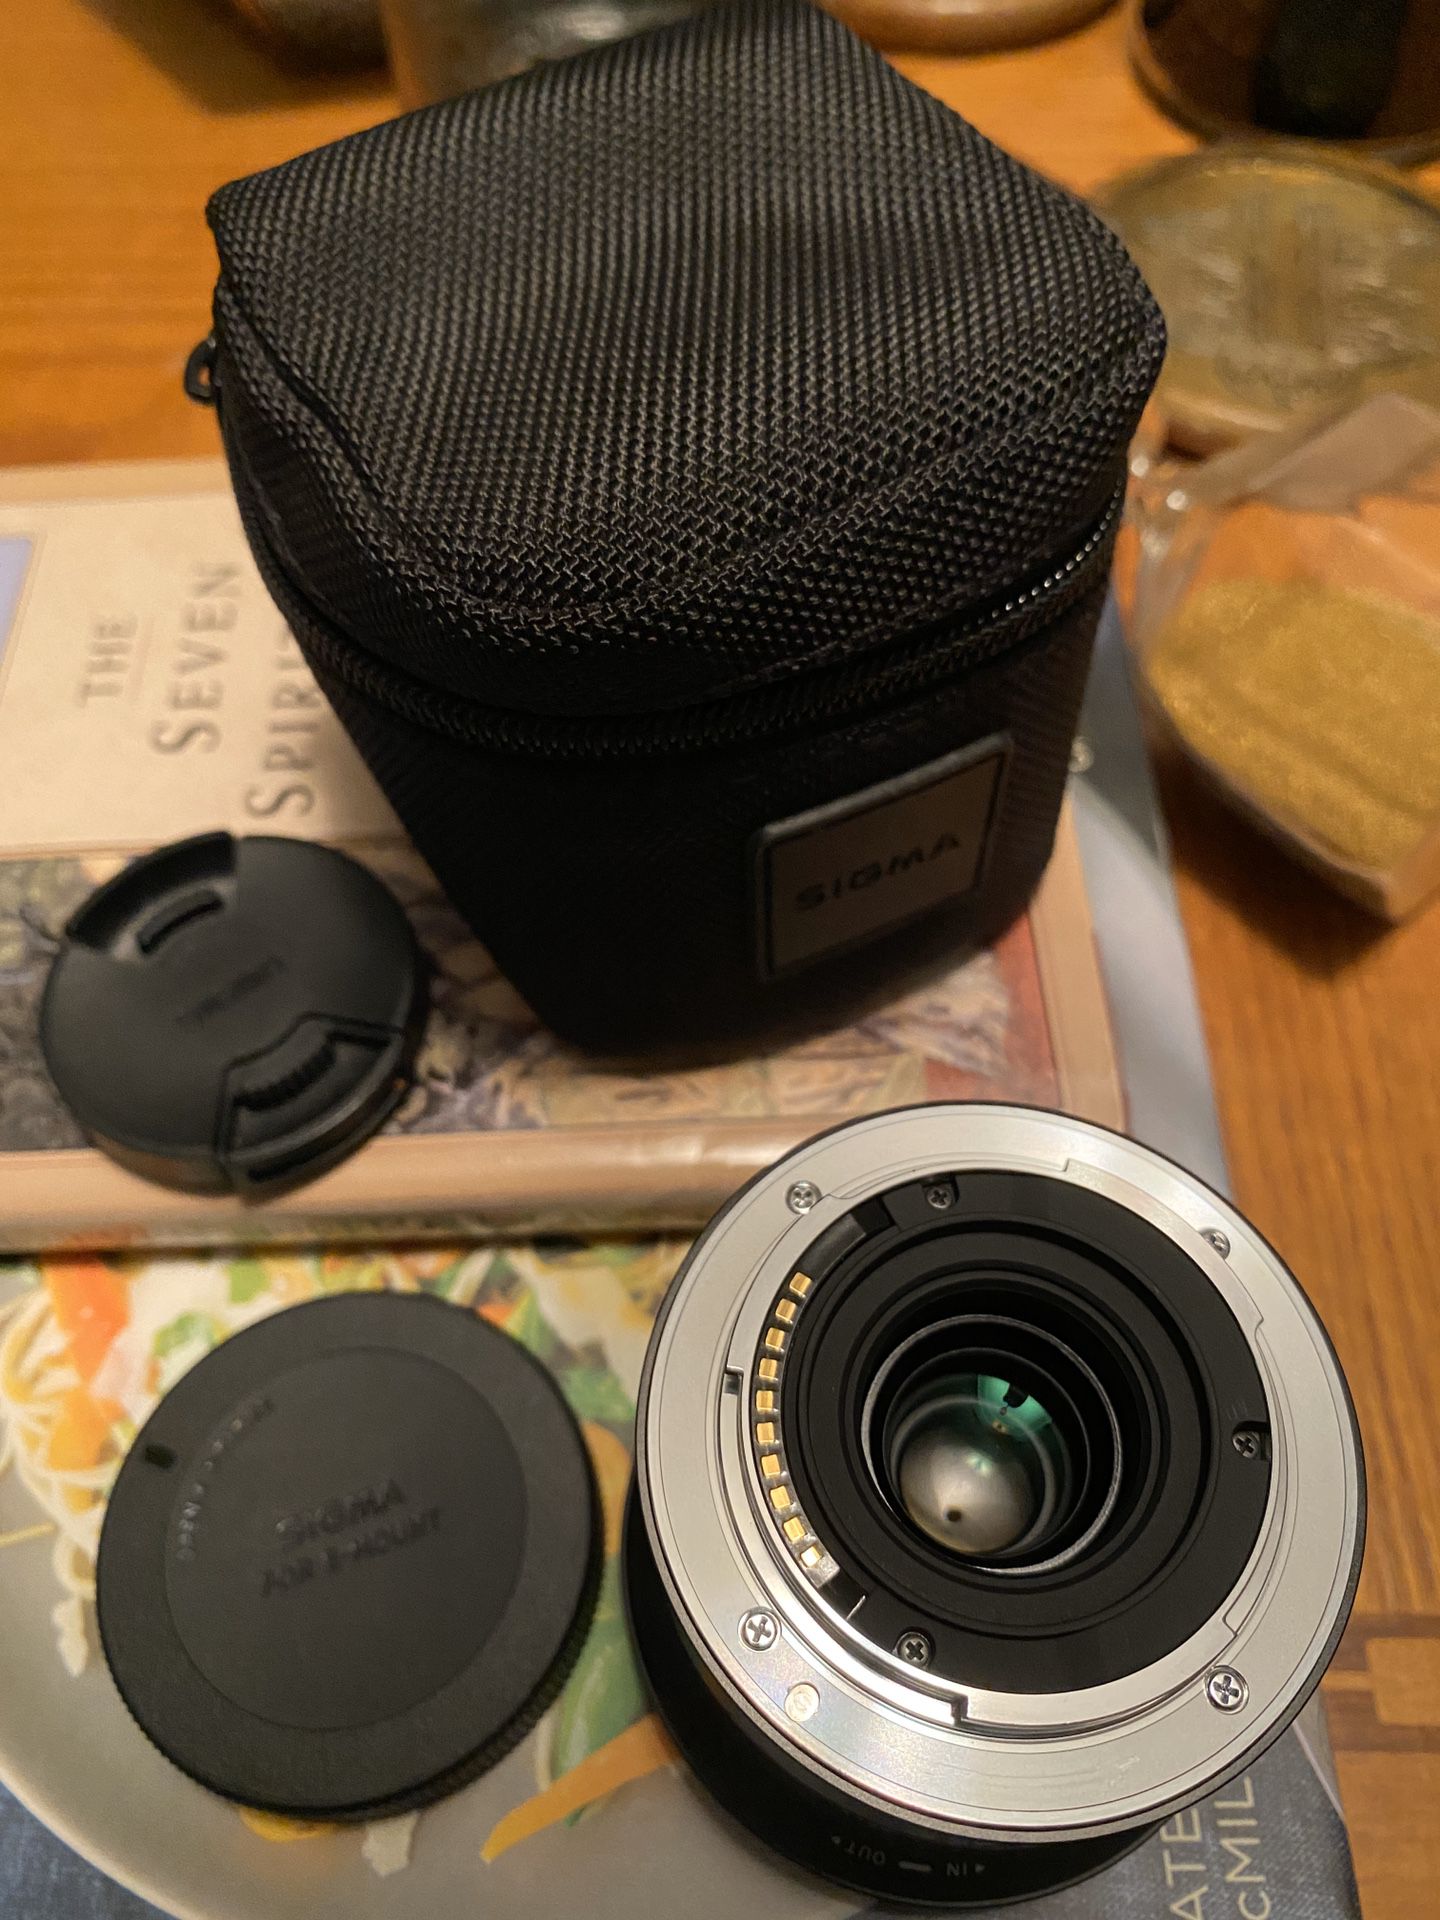 Sigma lens 19mm f/2.8 DN Lens for Sony NEX E-mount Cameras (Black).